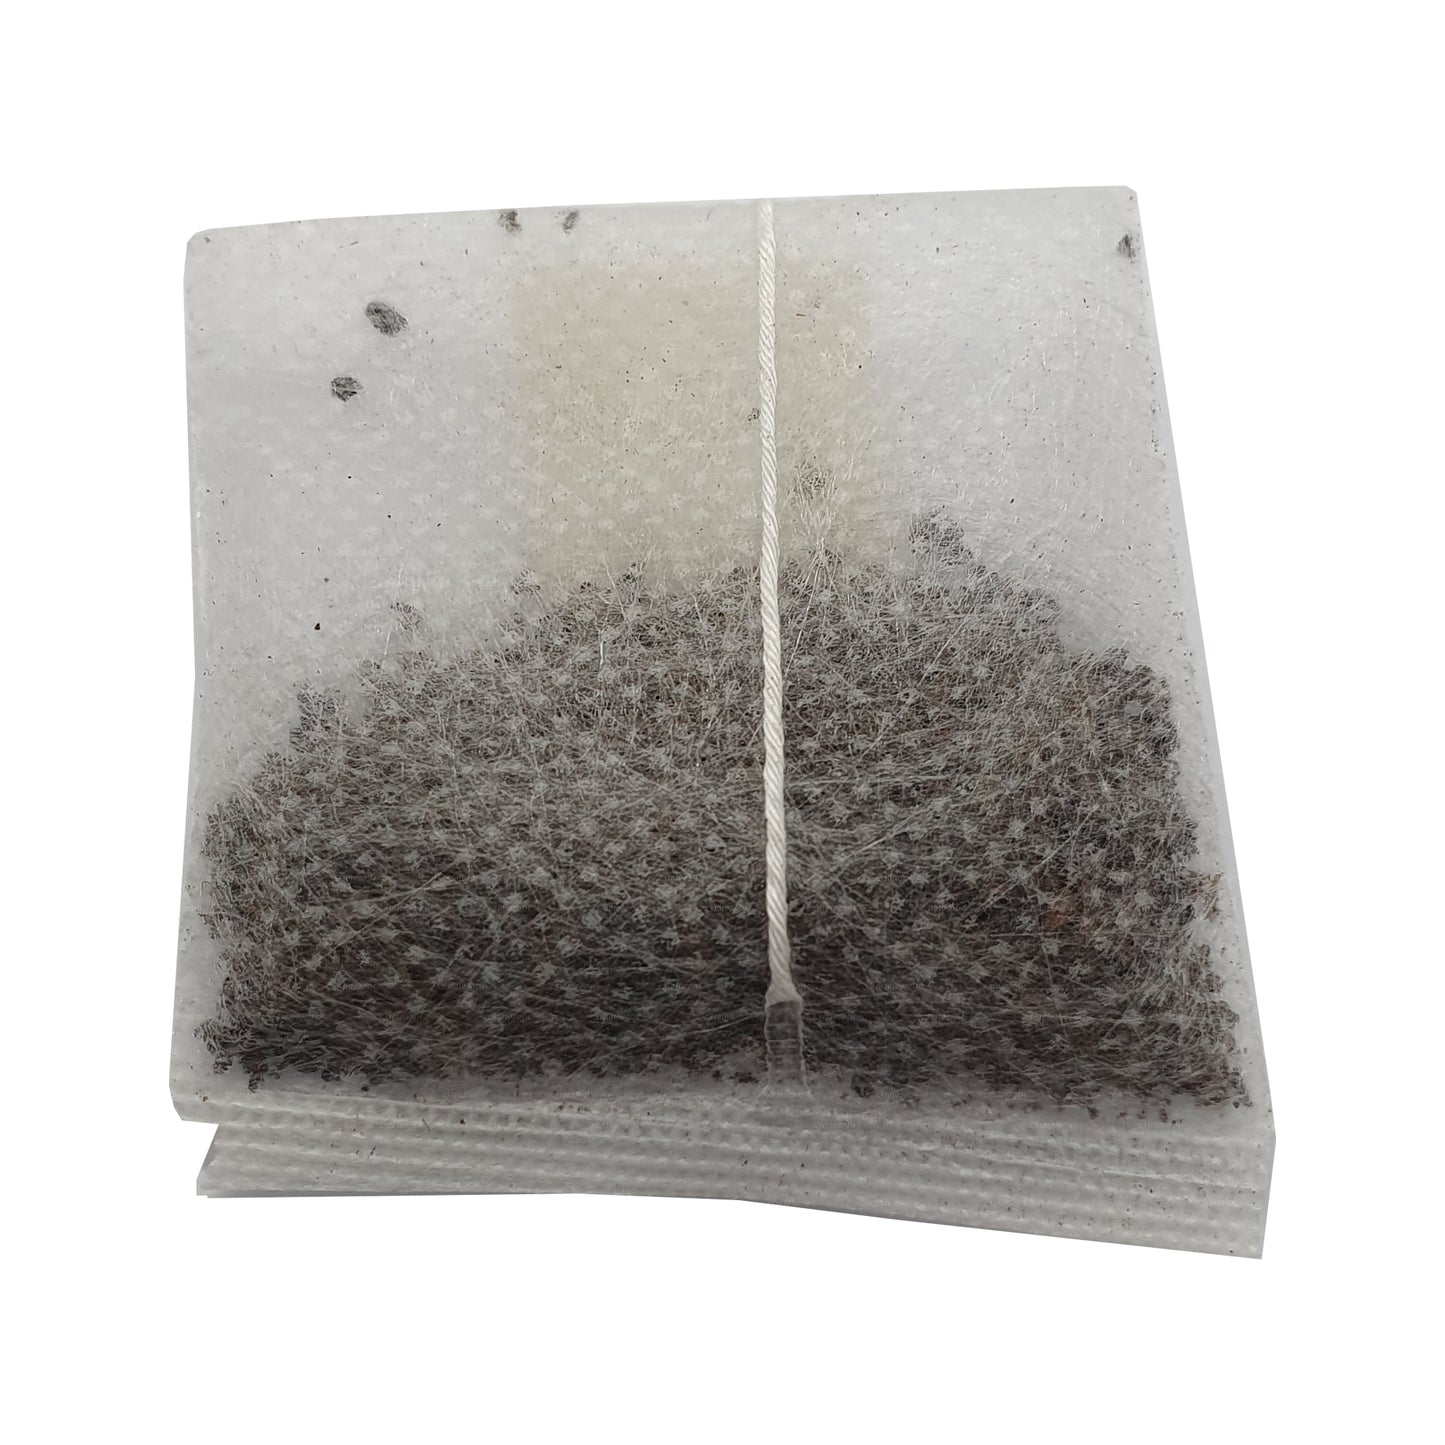 Lakpura Goraka Bitki Çayı (40g) 30 Çay Poşeti